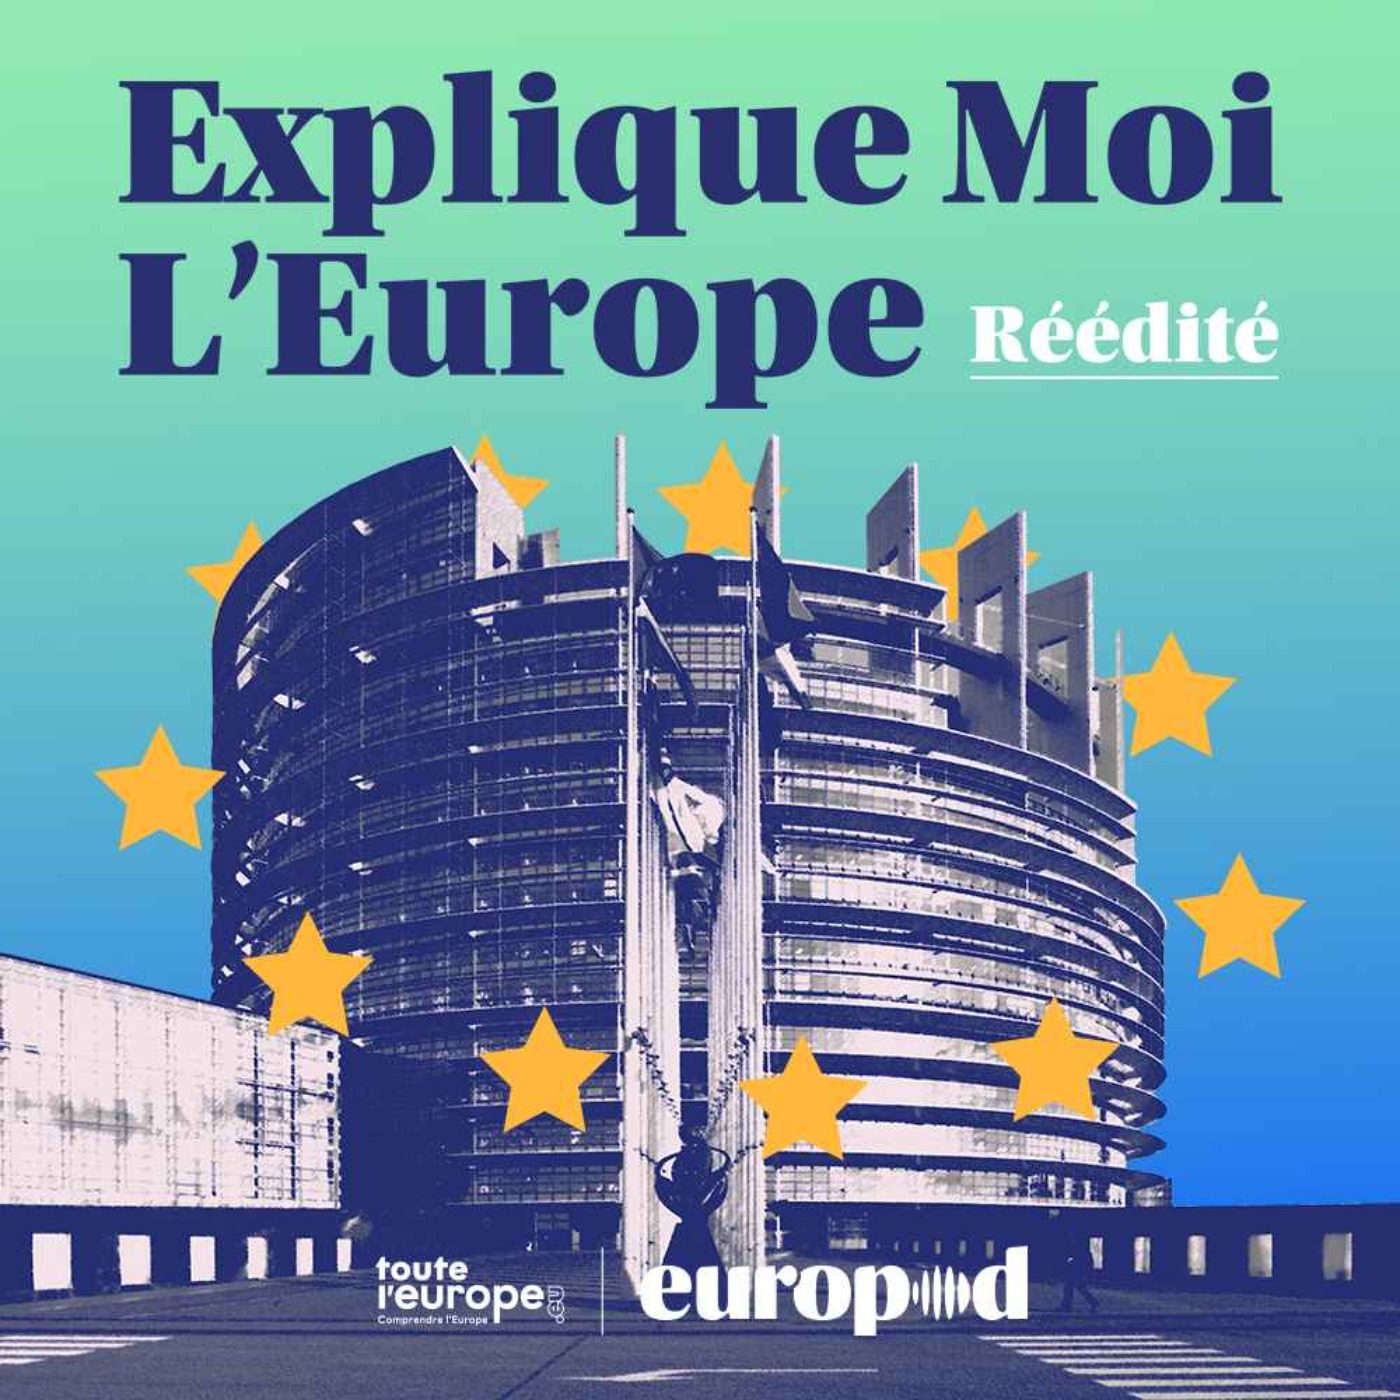 Explique-moi l'Europe:Europod